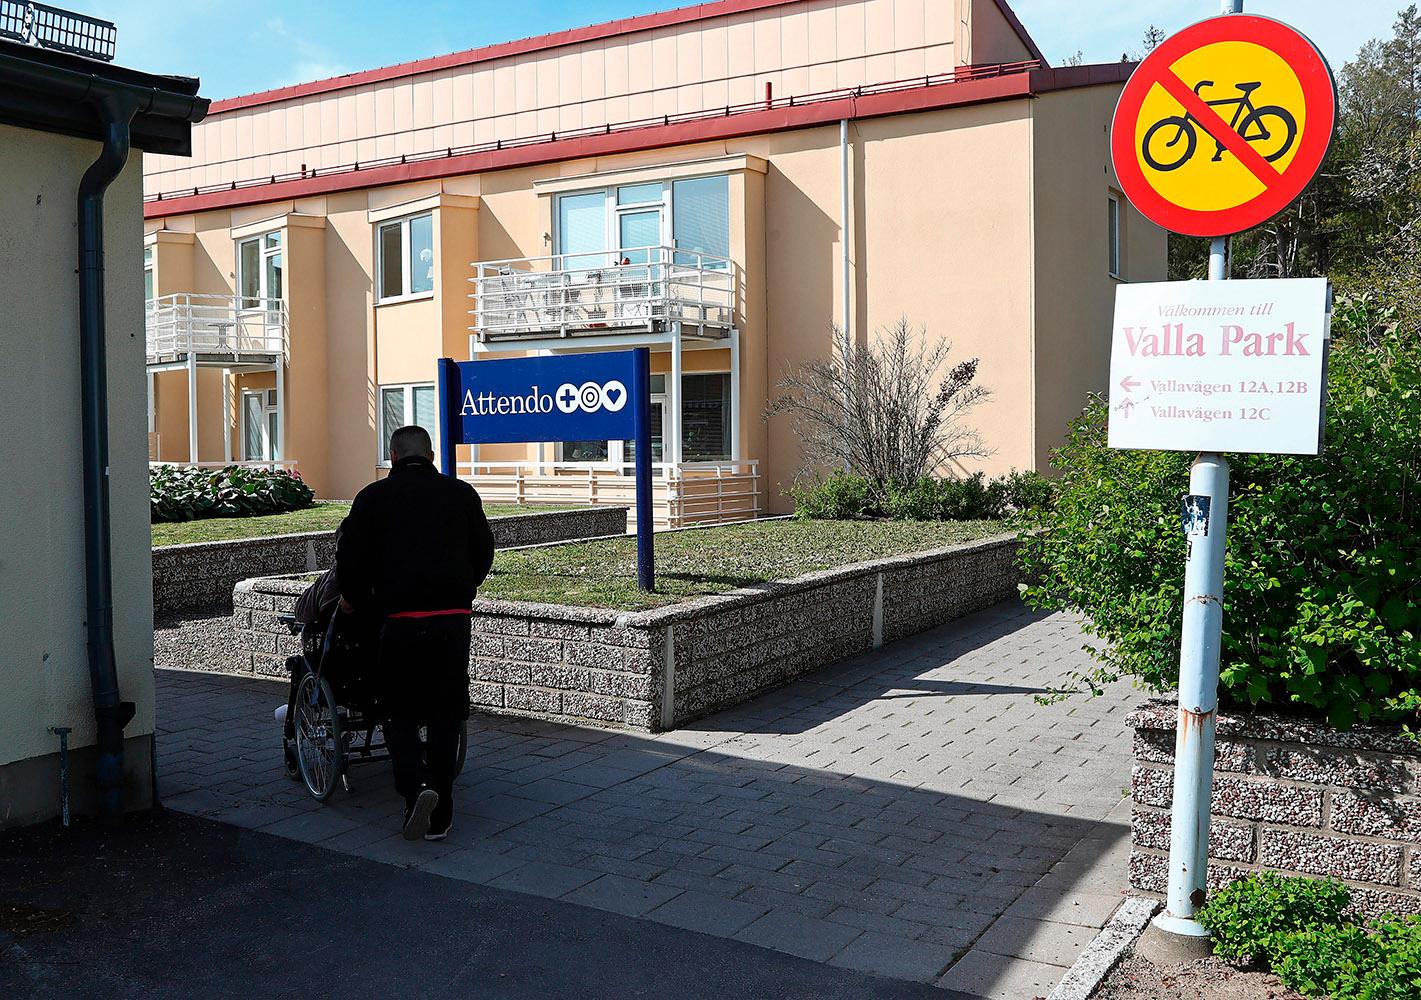 Attendos demensboende Valla Park i Linköping är ett av tre vårdhem som har för lite  personal nattetid enligt IVO. Samtidigt fortsätter riskkapitalbolaget att plocka ut mångmiljonvinster.